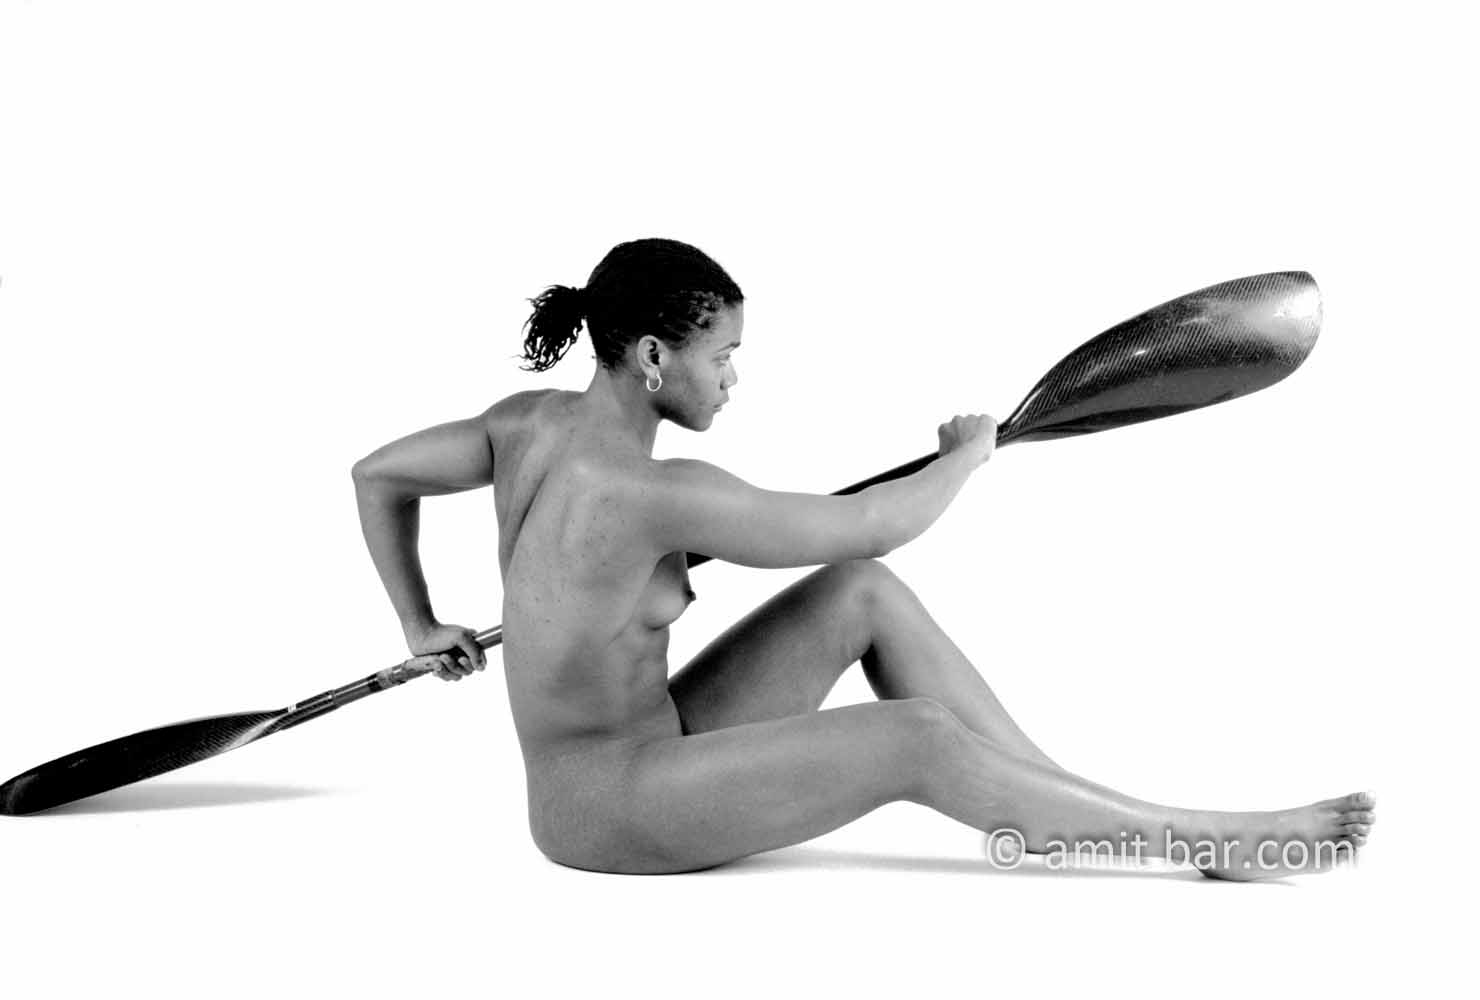 Canoe girl 1-III: Nude canoe sporter in my studio